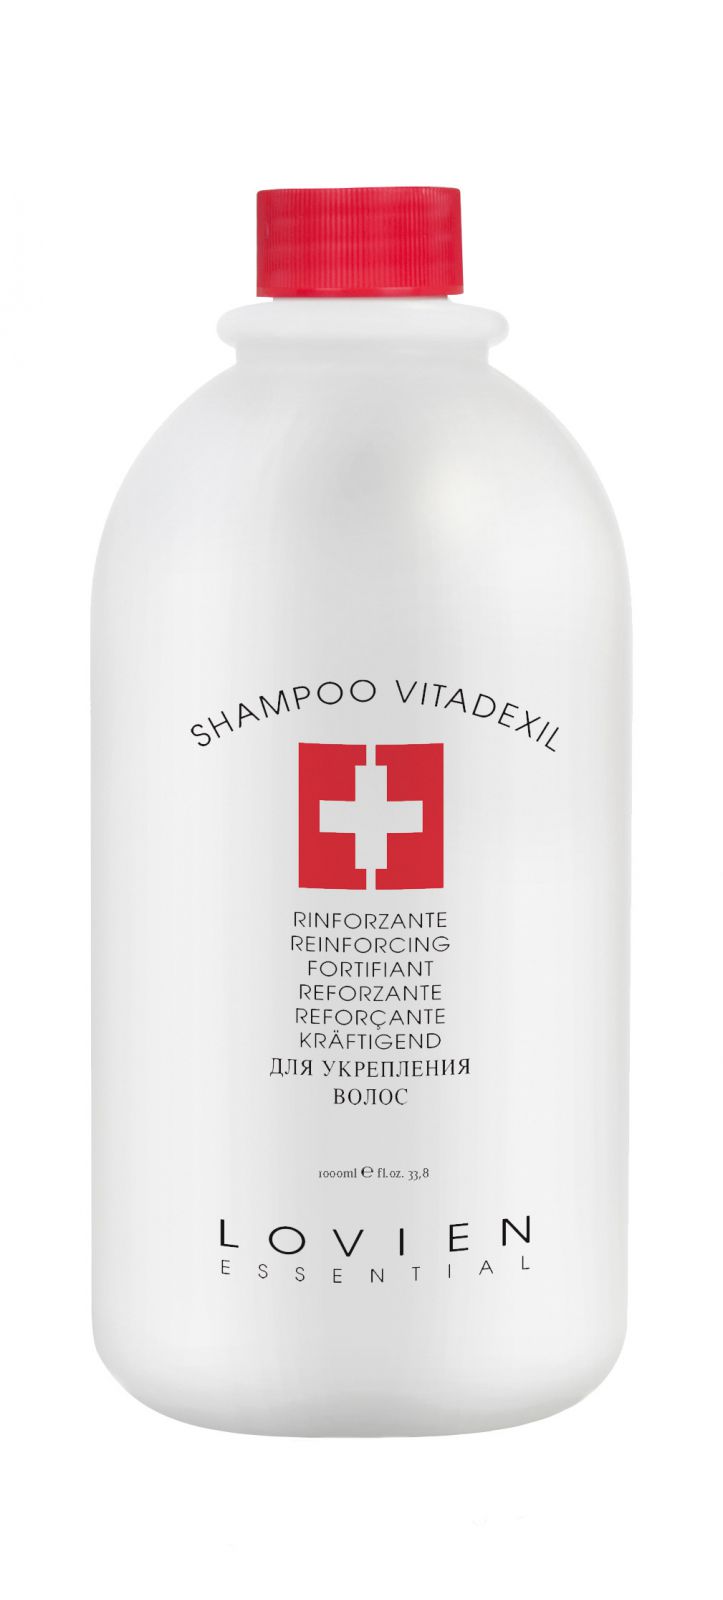 Lovien Shampoo Vitadexil 1000ml - šampon na vlasy - Vlasový šampon s mentolovým efektem.